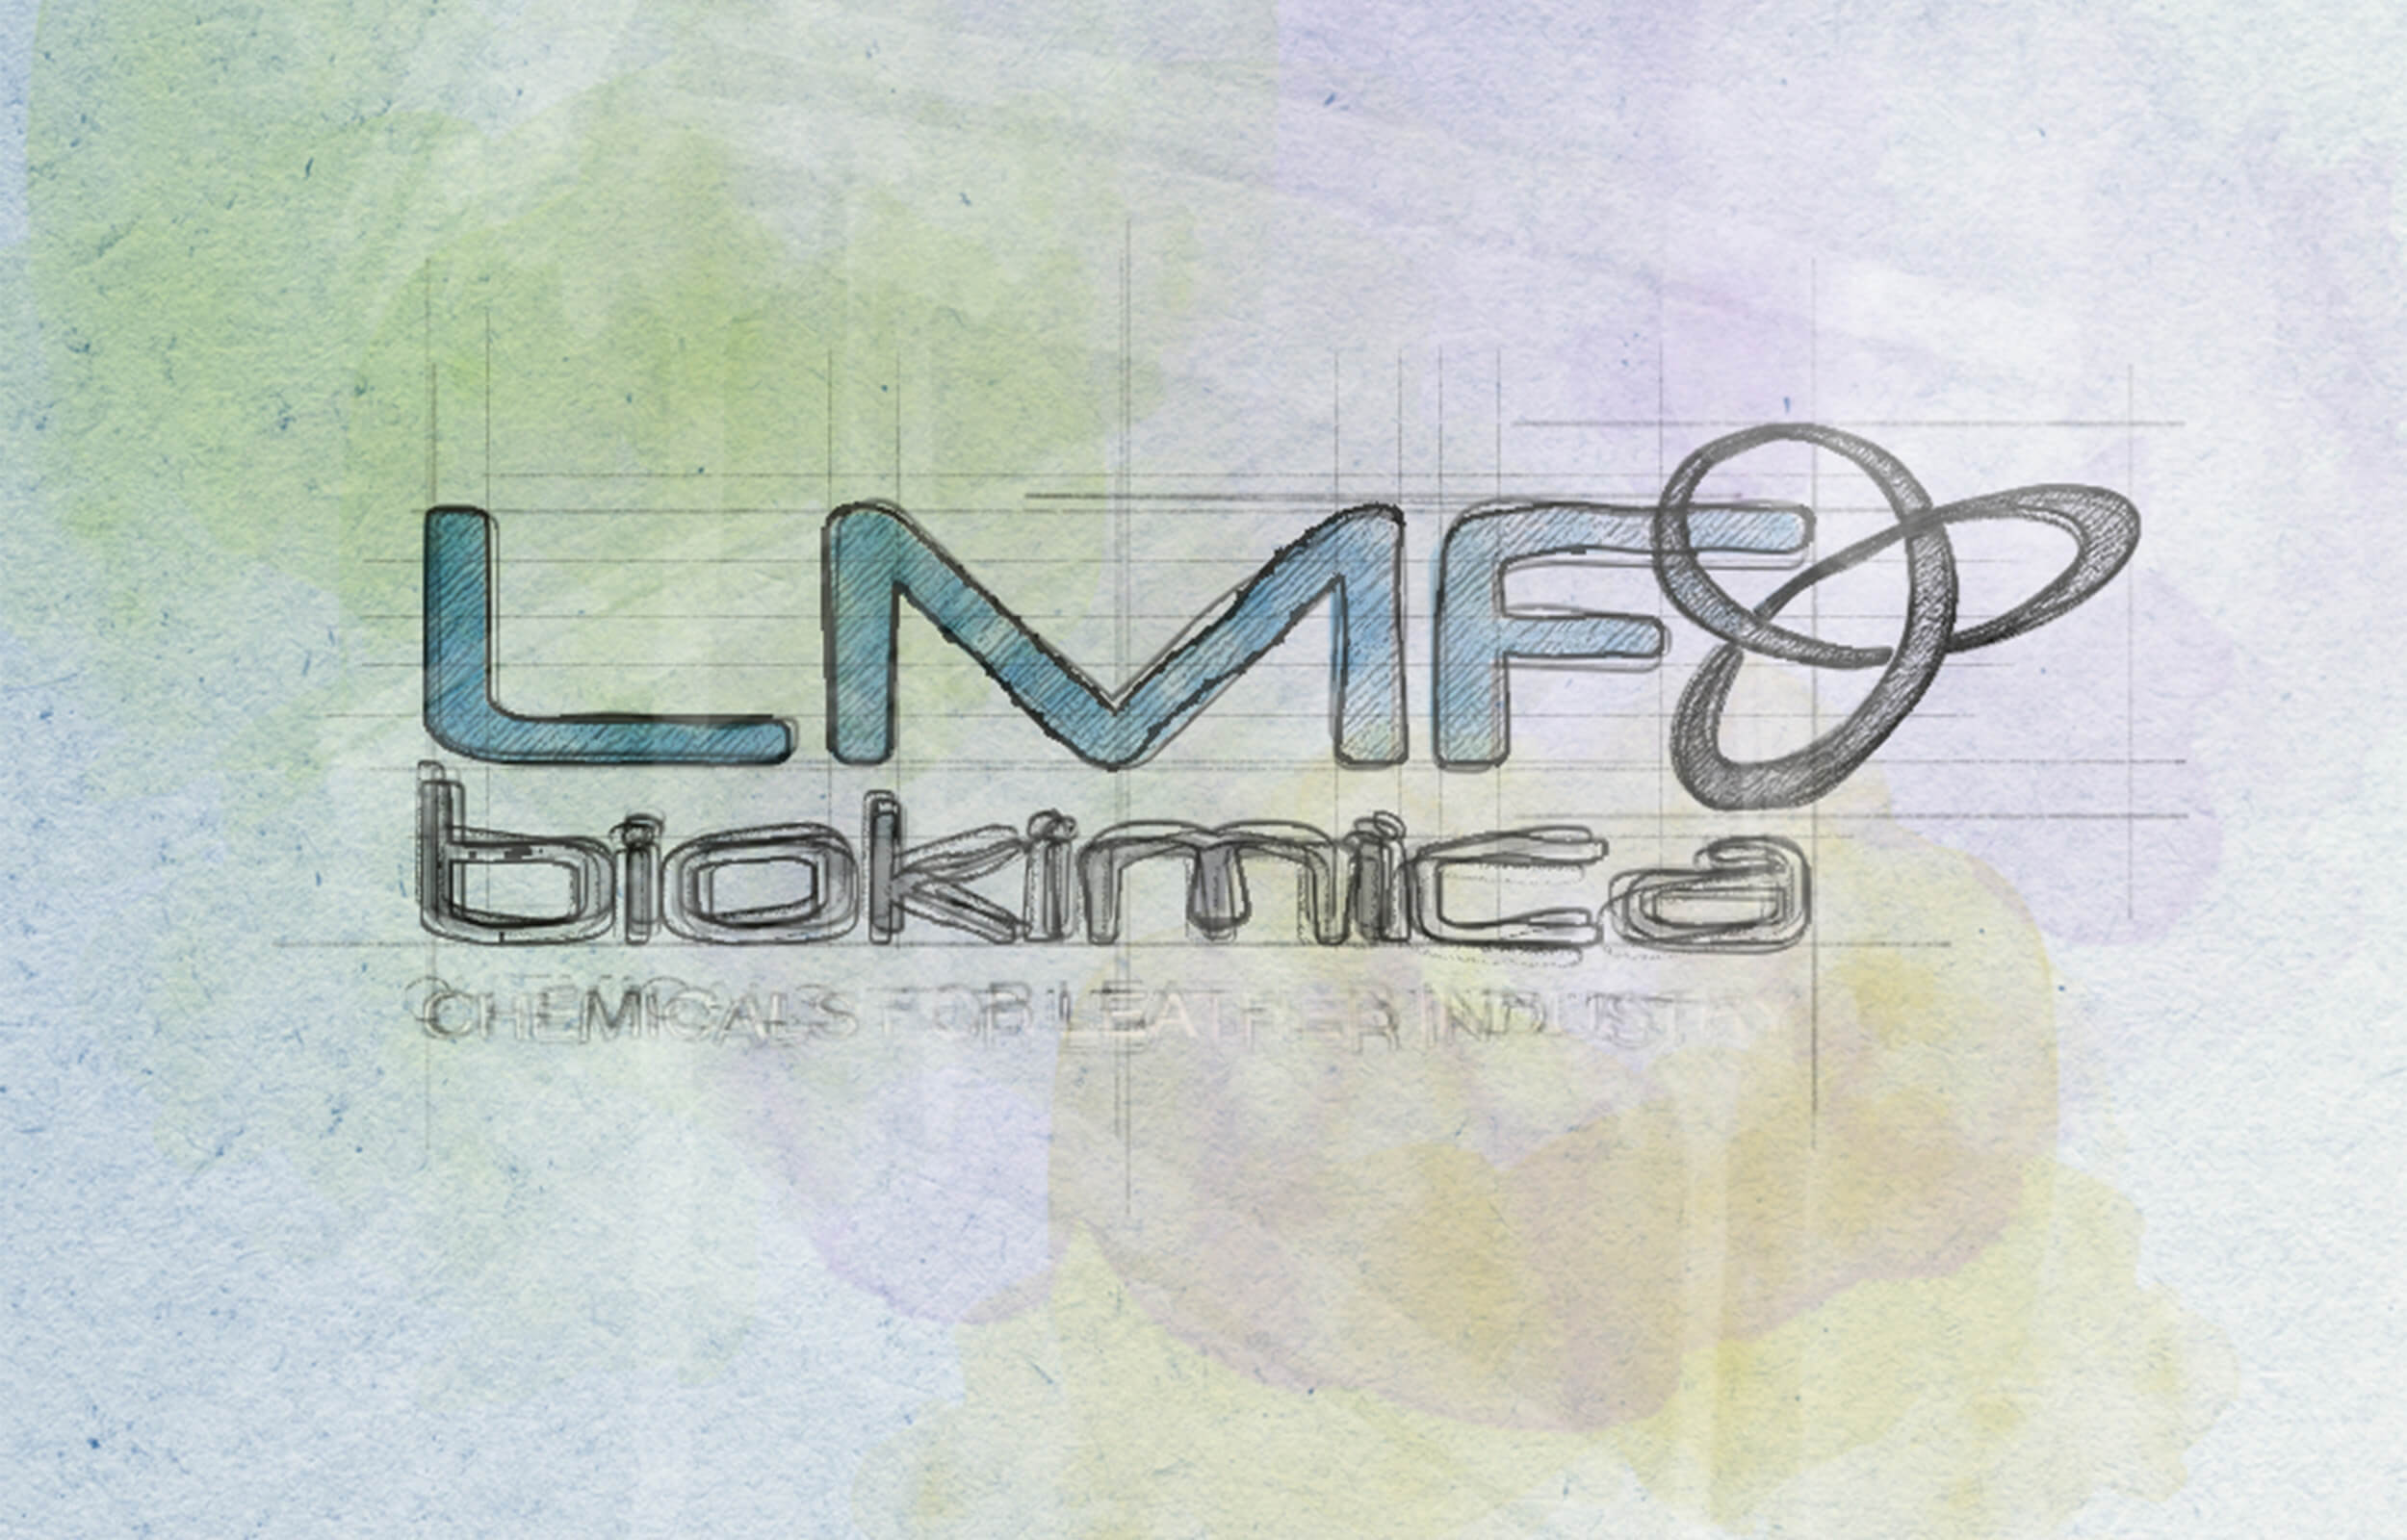 LMF Biokimica